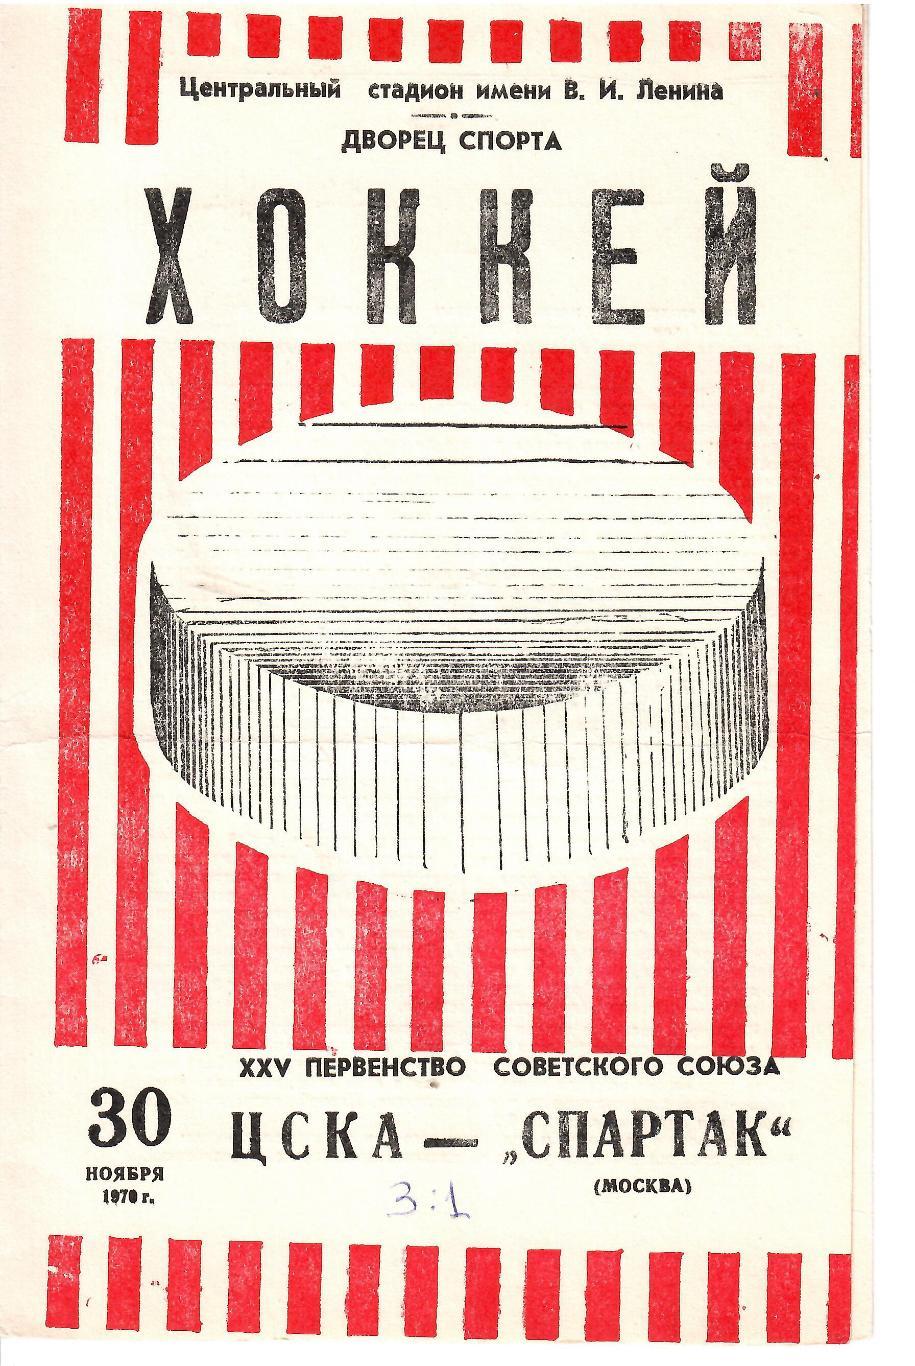 1970 Хоккей ЦСКА - Спартак Москва (30.11)